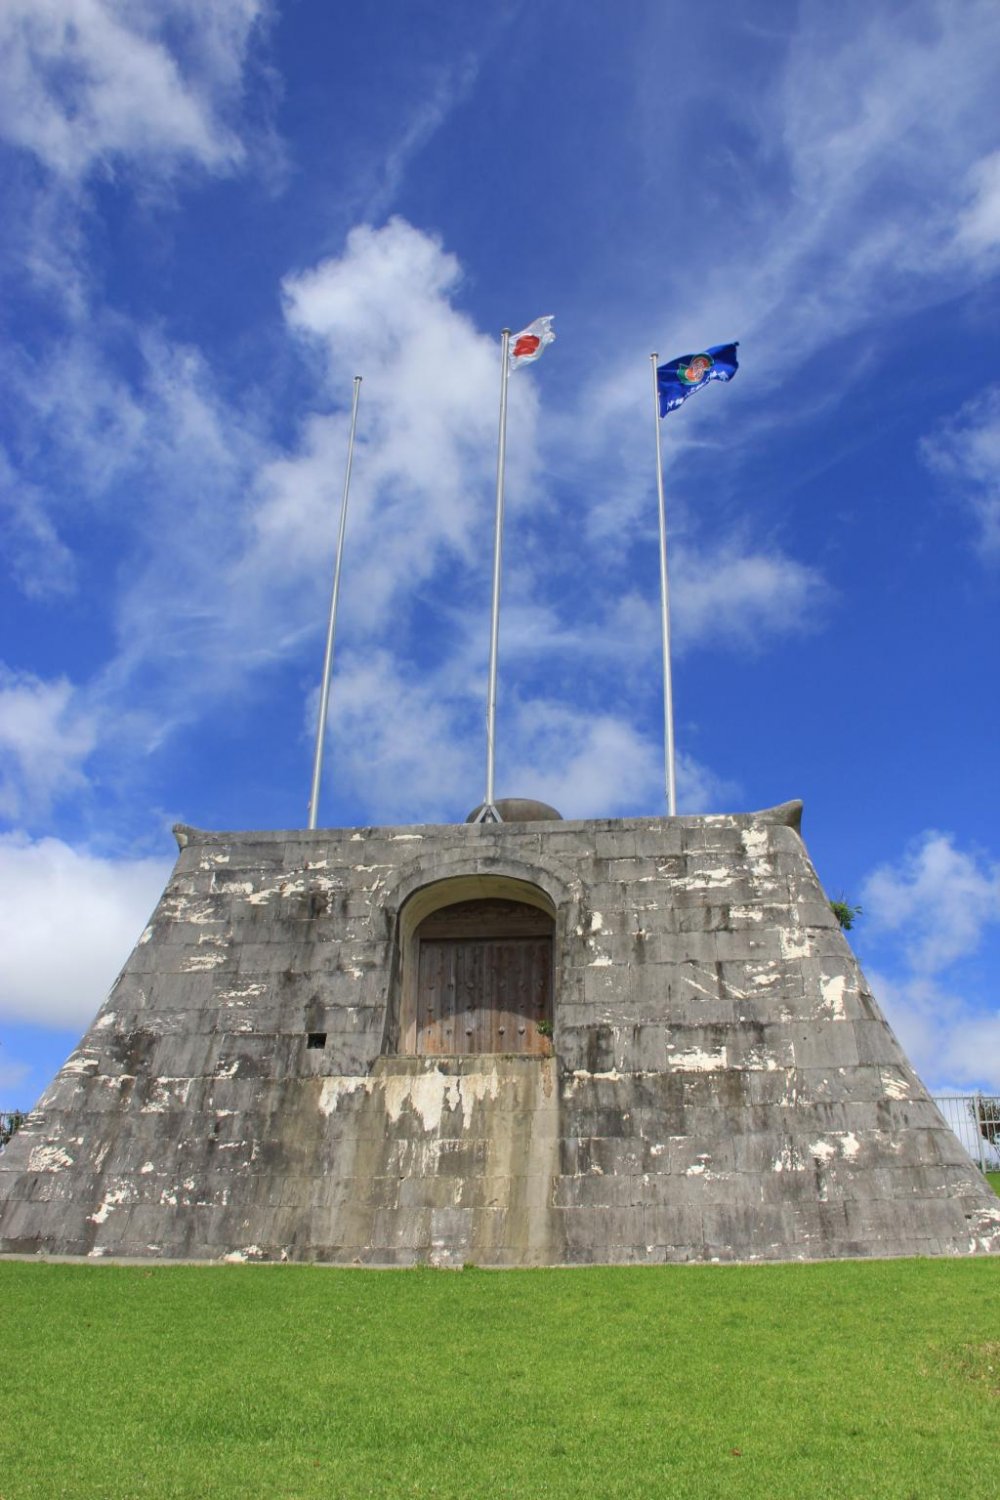 Tiang-tiang bendera stadion berada di atas sebuah gerbang batu yang terinspirasi dari Situs Warisan Dunia Sonohyan Utaki yang ada di Naha